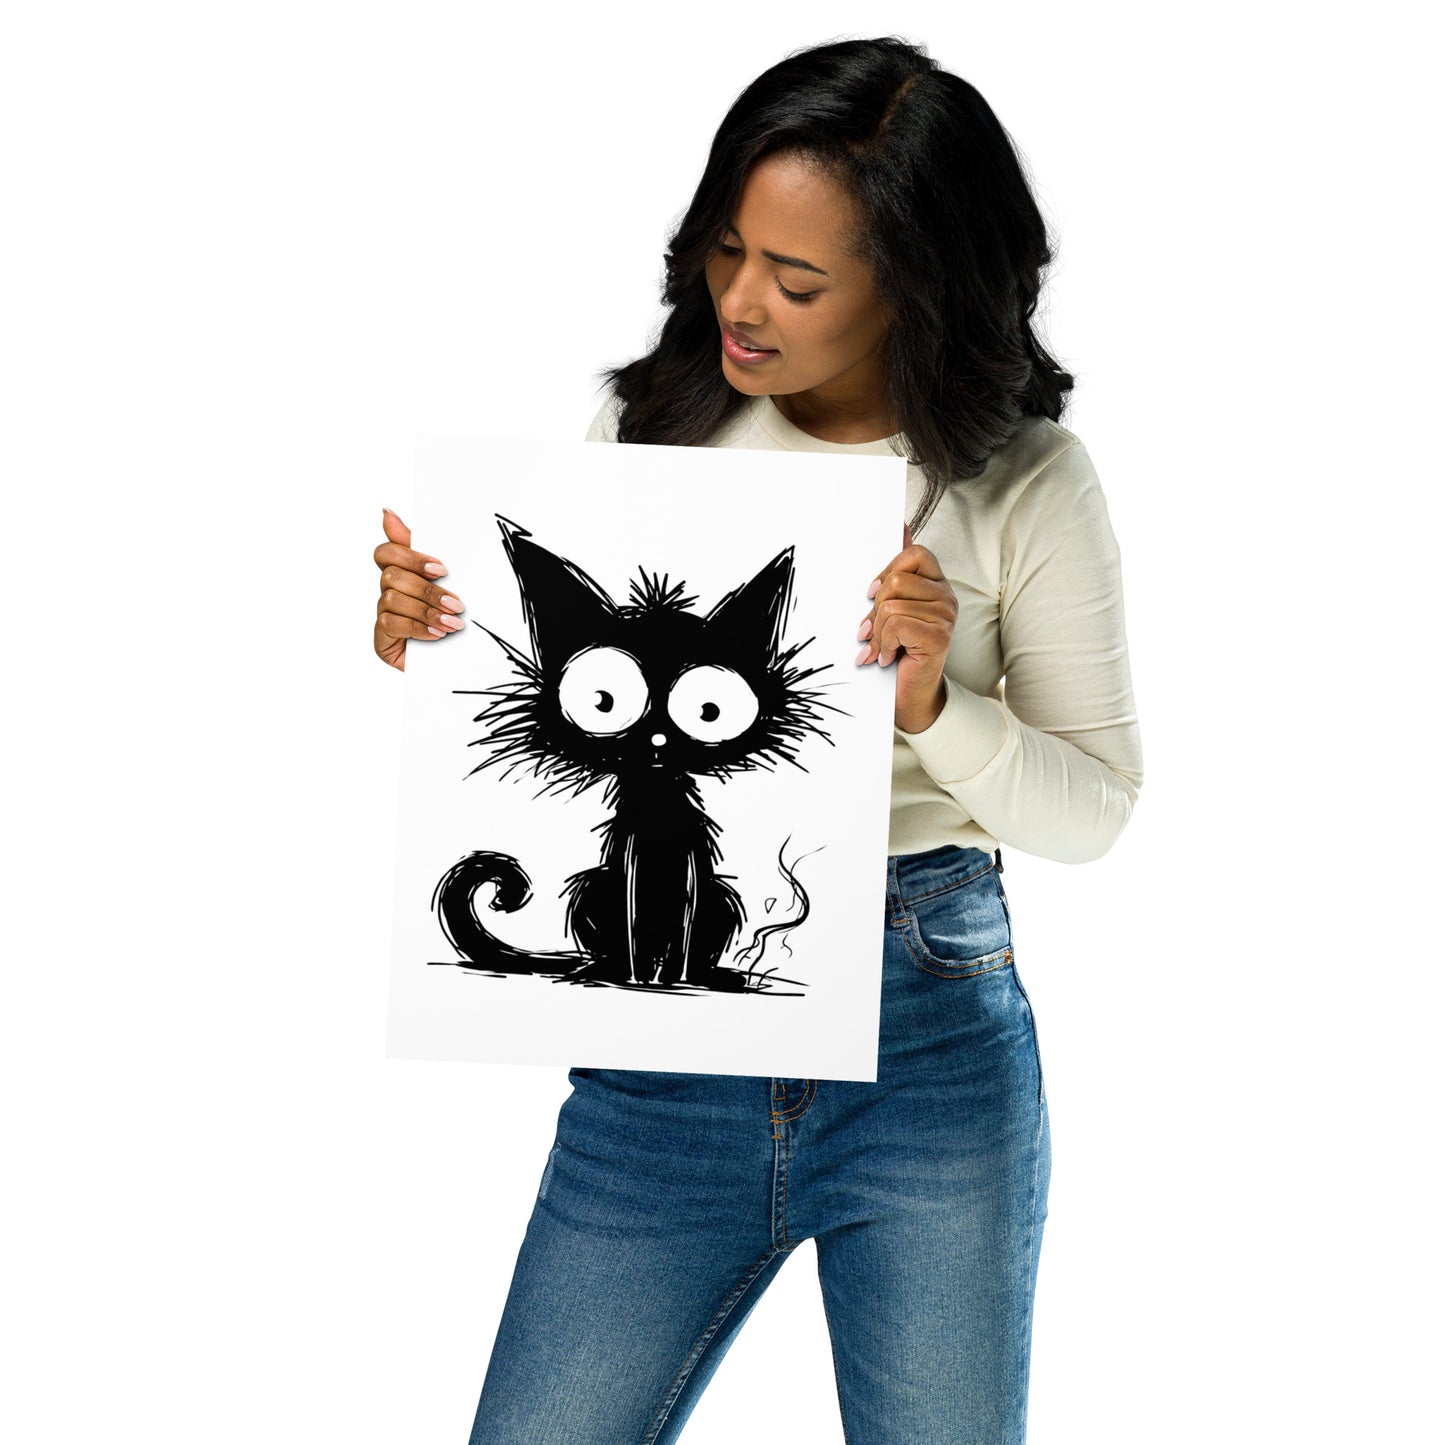 Wunderliche Katzenkunst / Plakatkunst der schwarzen Katze